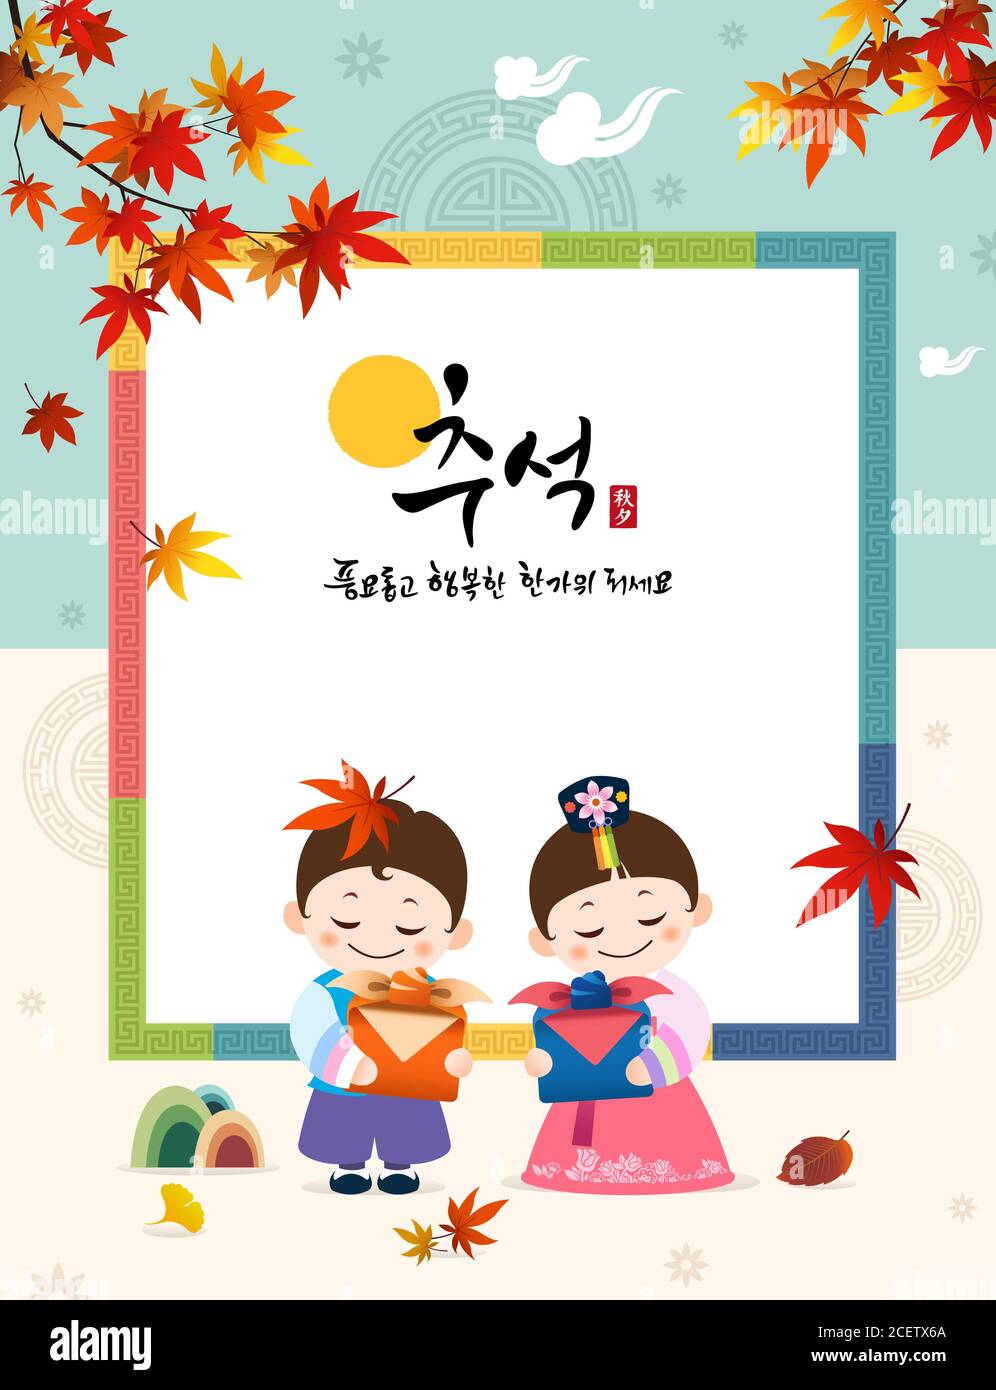 Le jour de Thanksgiving coréen. Les enfants Hanbok tiennent des cadeaux traditionnels. Feuilles d'érable et concepts de conception traditionnels. Traduction coréenne, Happy Chuseok. Illustration de Vecteur